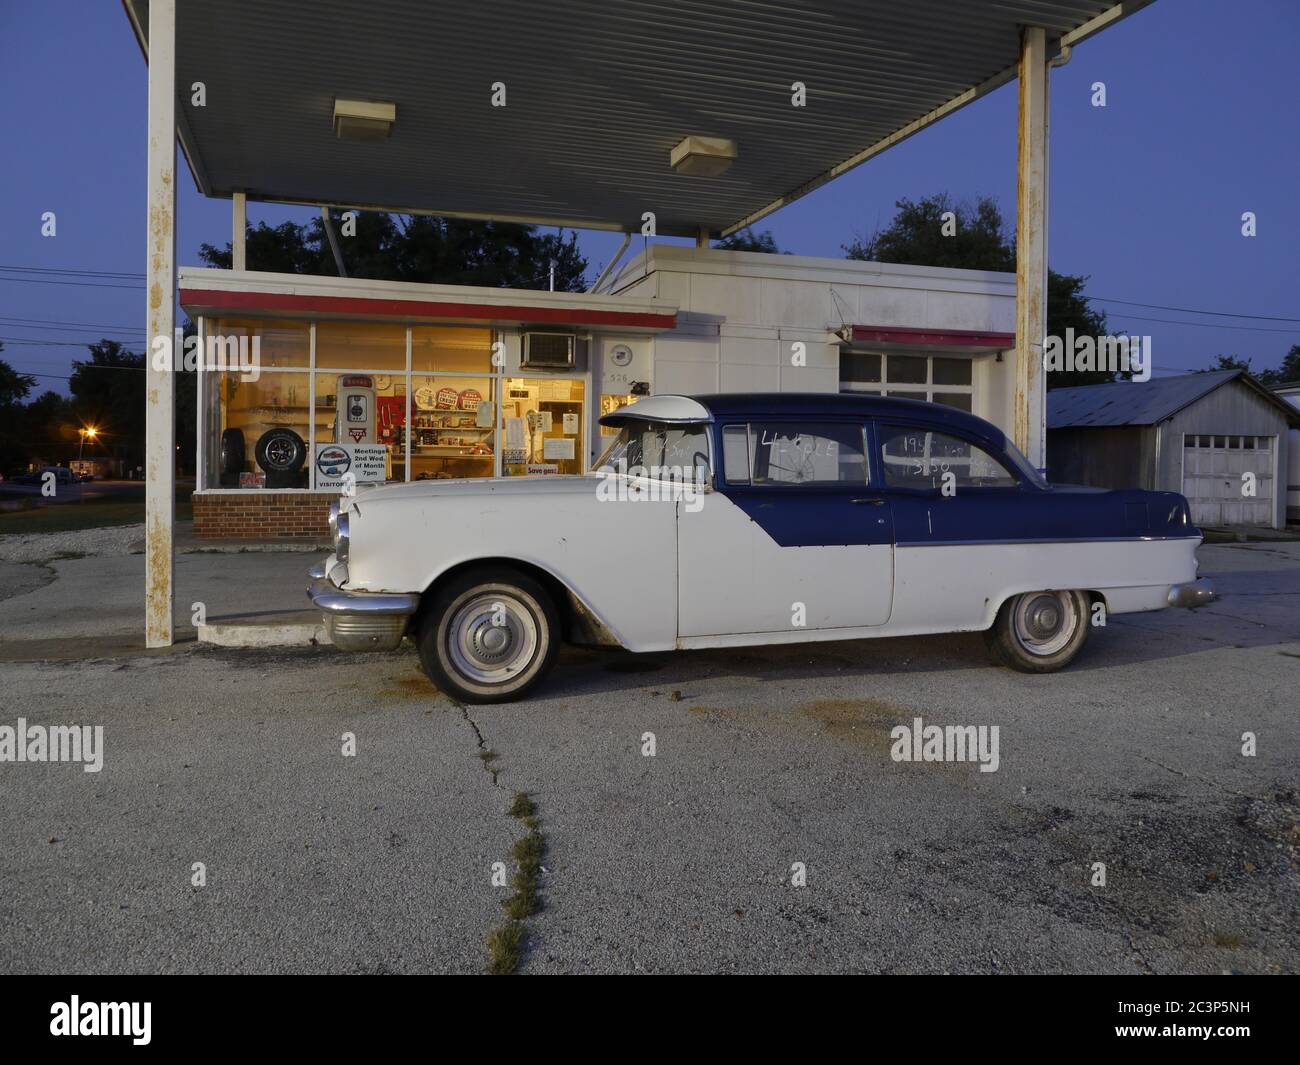 MONTGOMERY CITY, USA - 04. Sep 2014: Foto des Jahrgangs 1955 Pontiac parkte an einer alten Tankstelle in der Dämmerung in der kleinen Stadt Missouri. Stockfoto